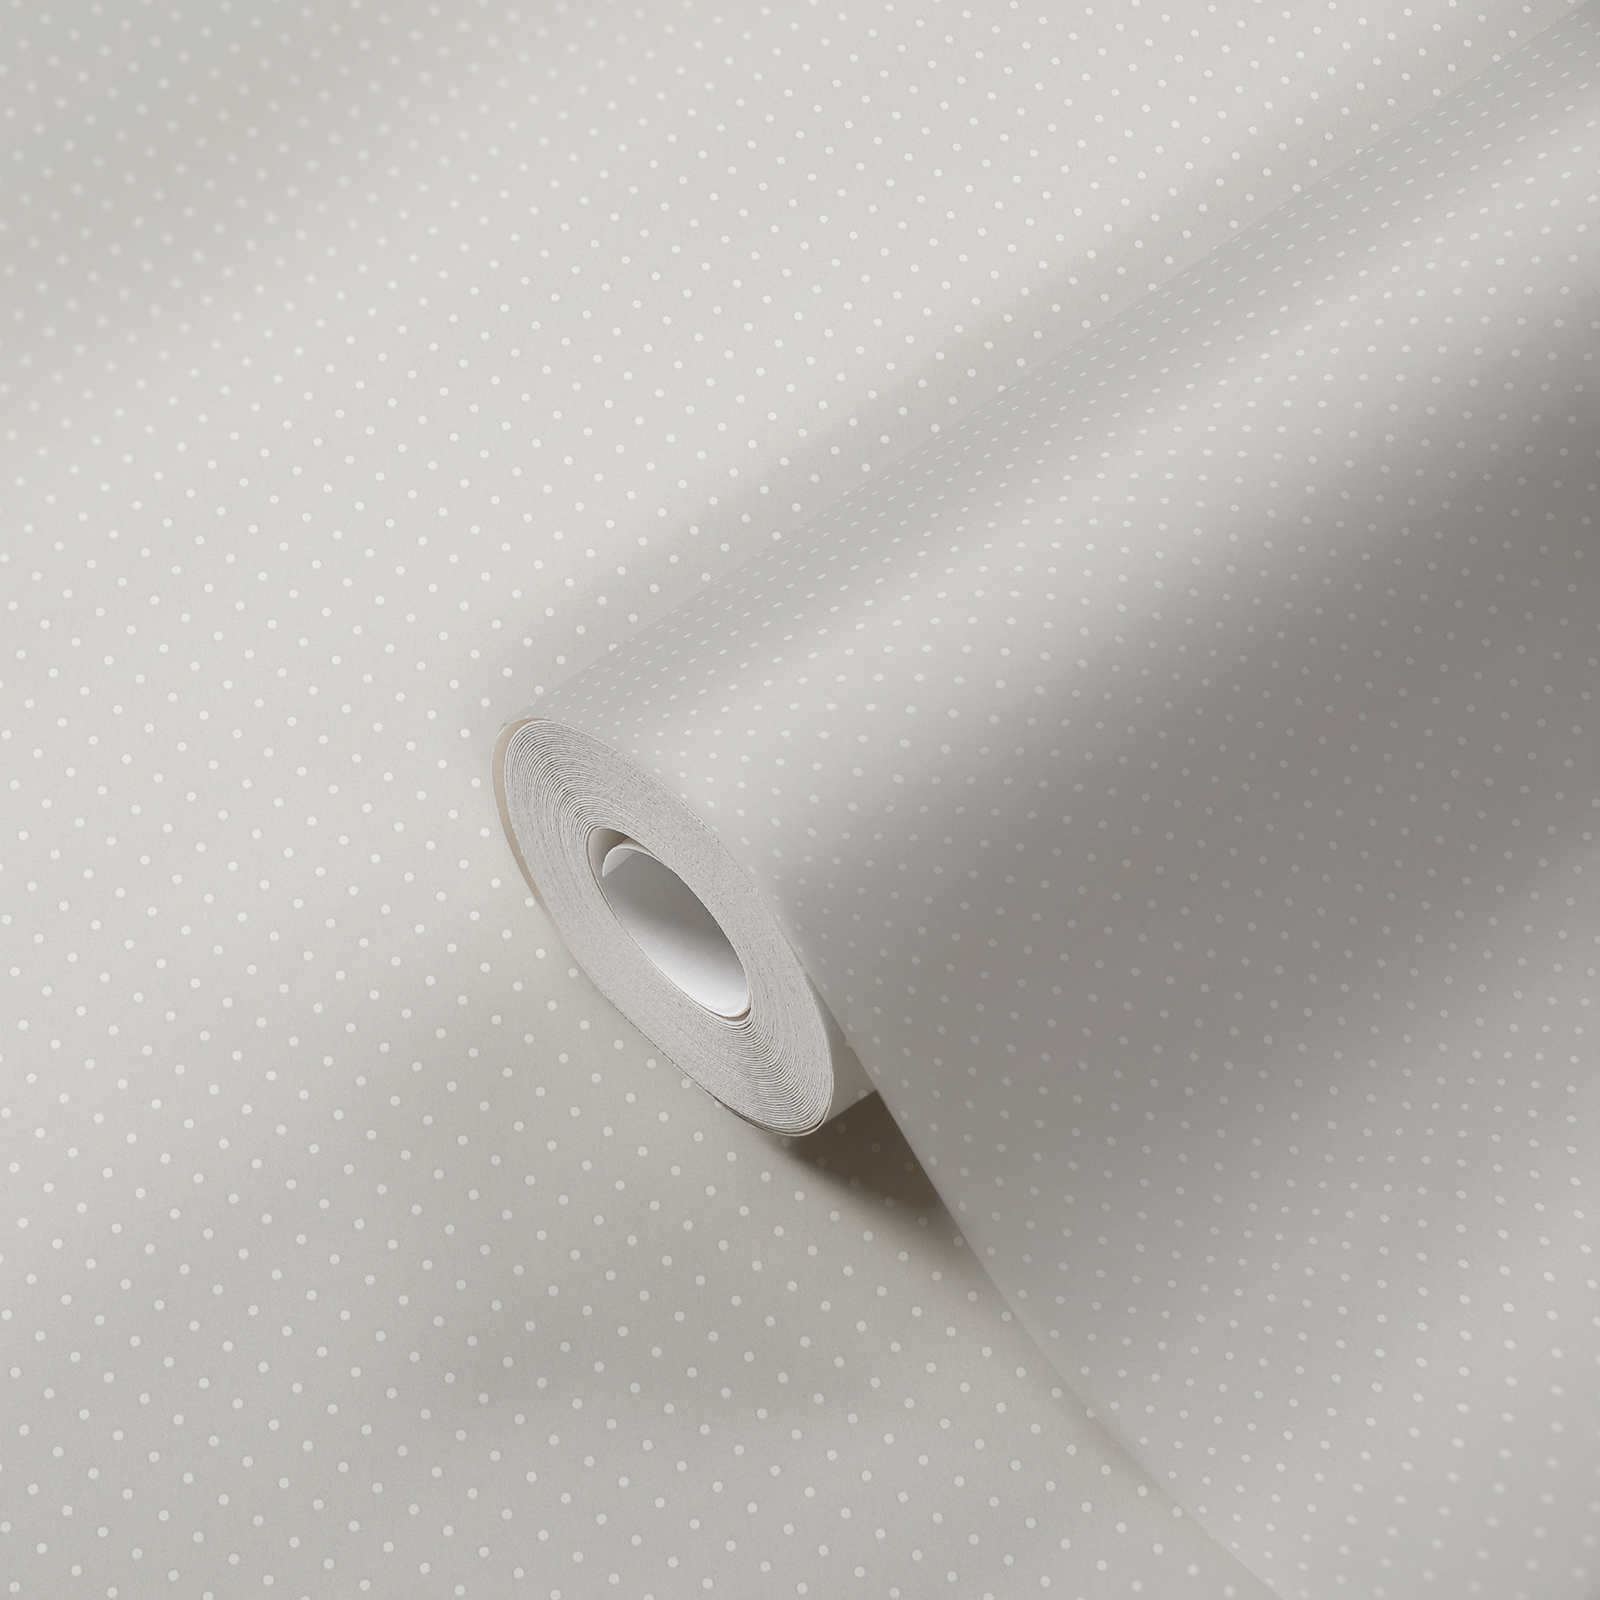             Papel pintado de tejido no tejido con motivos de puntos pequeños - gris, blanco
        